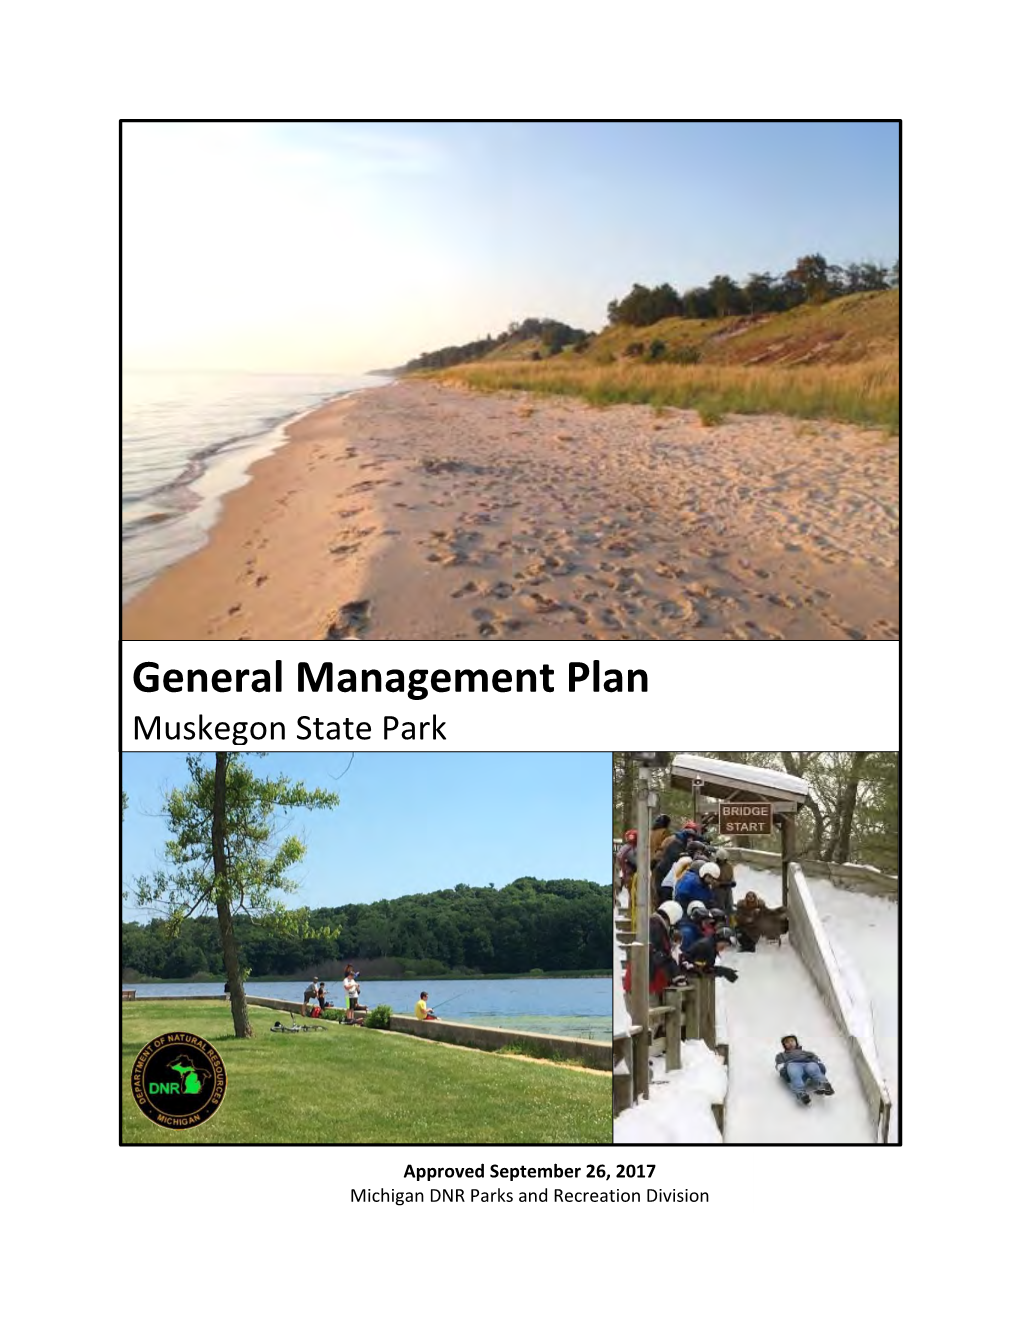 Muskegon State Park General Management Plan